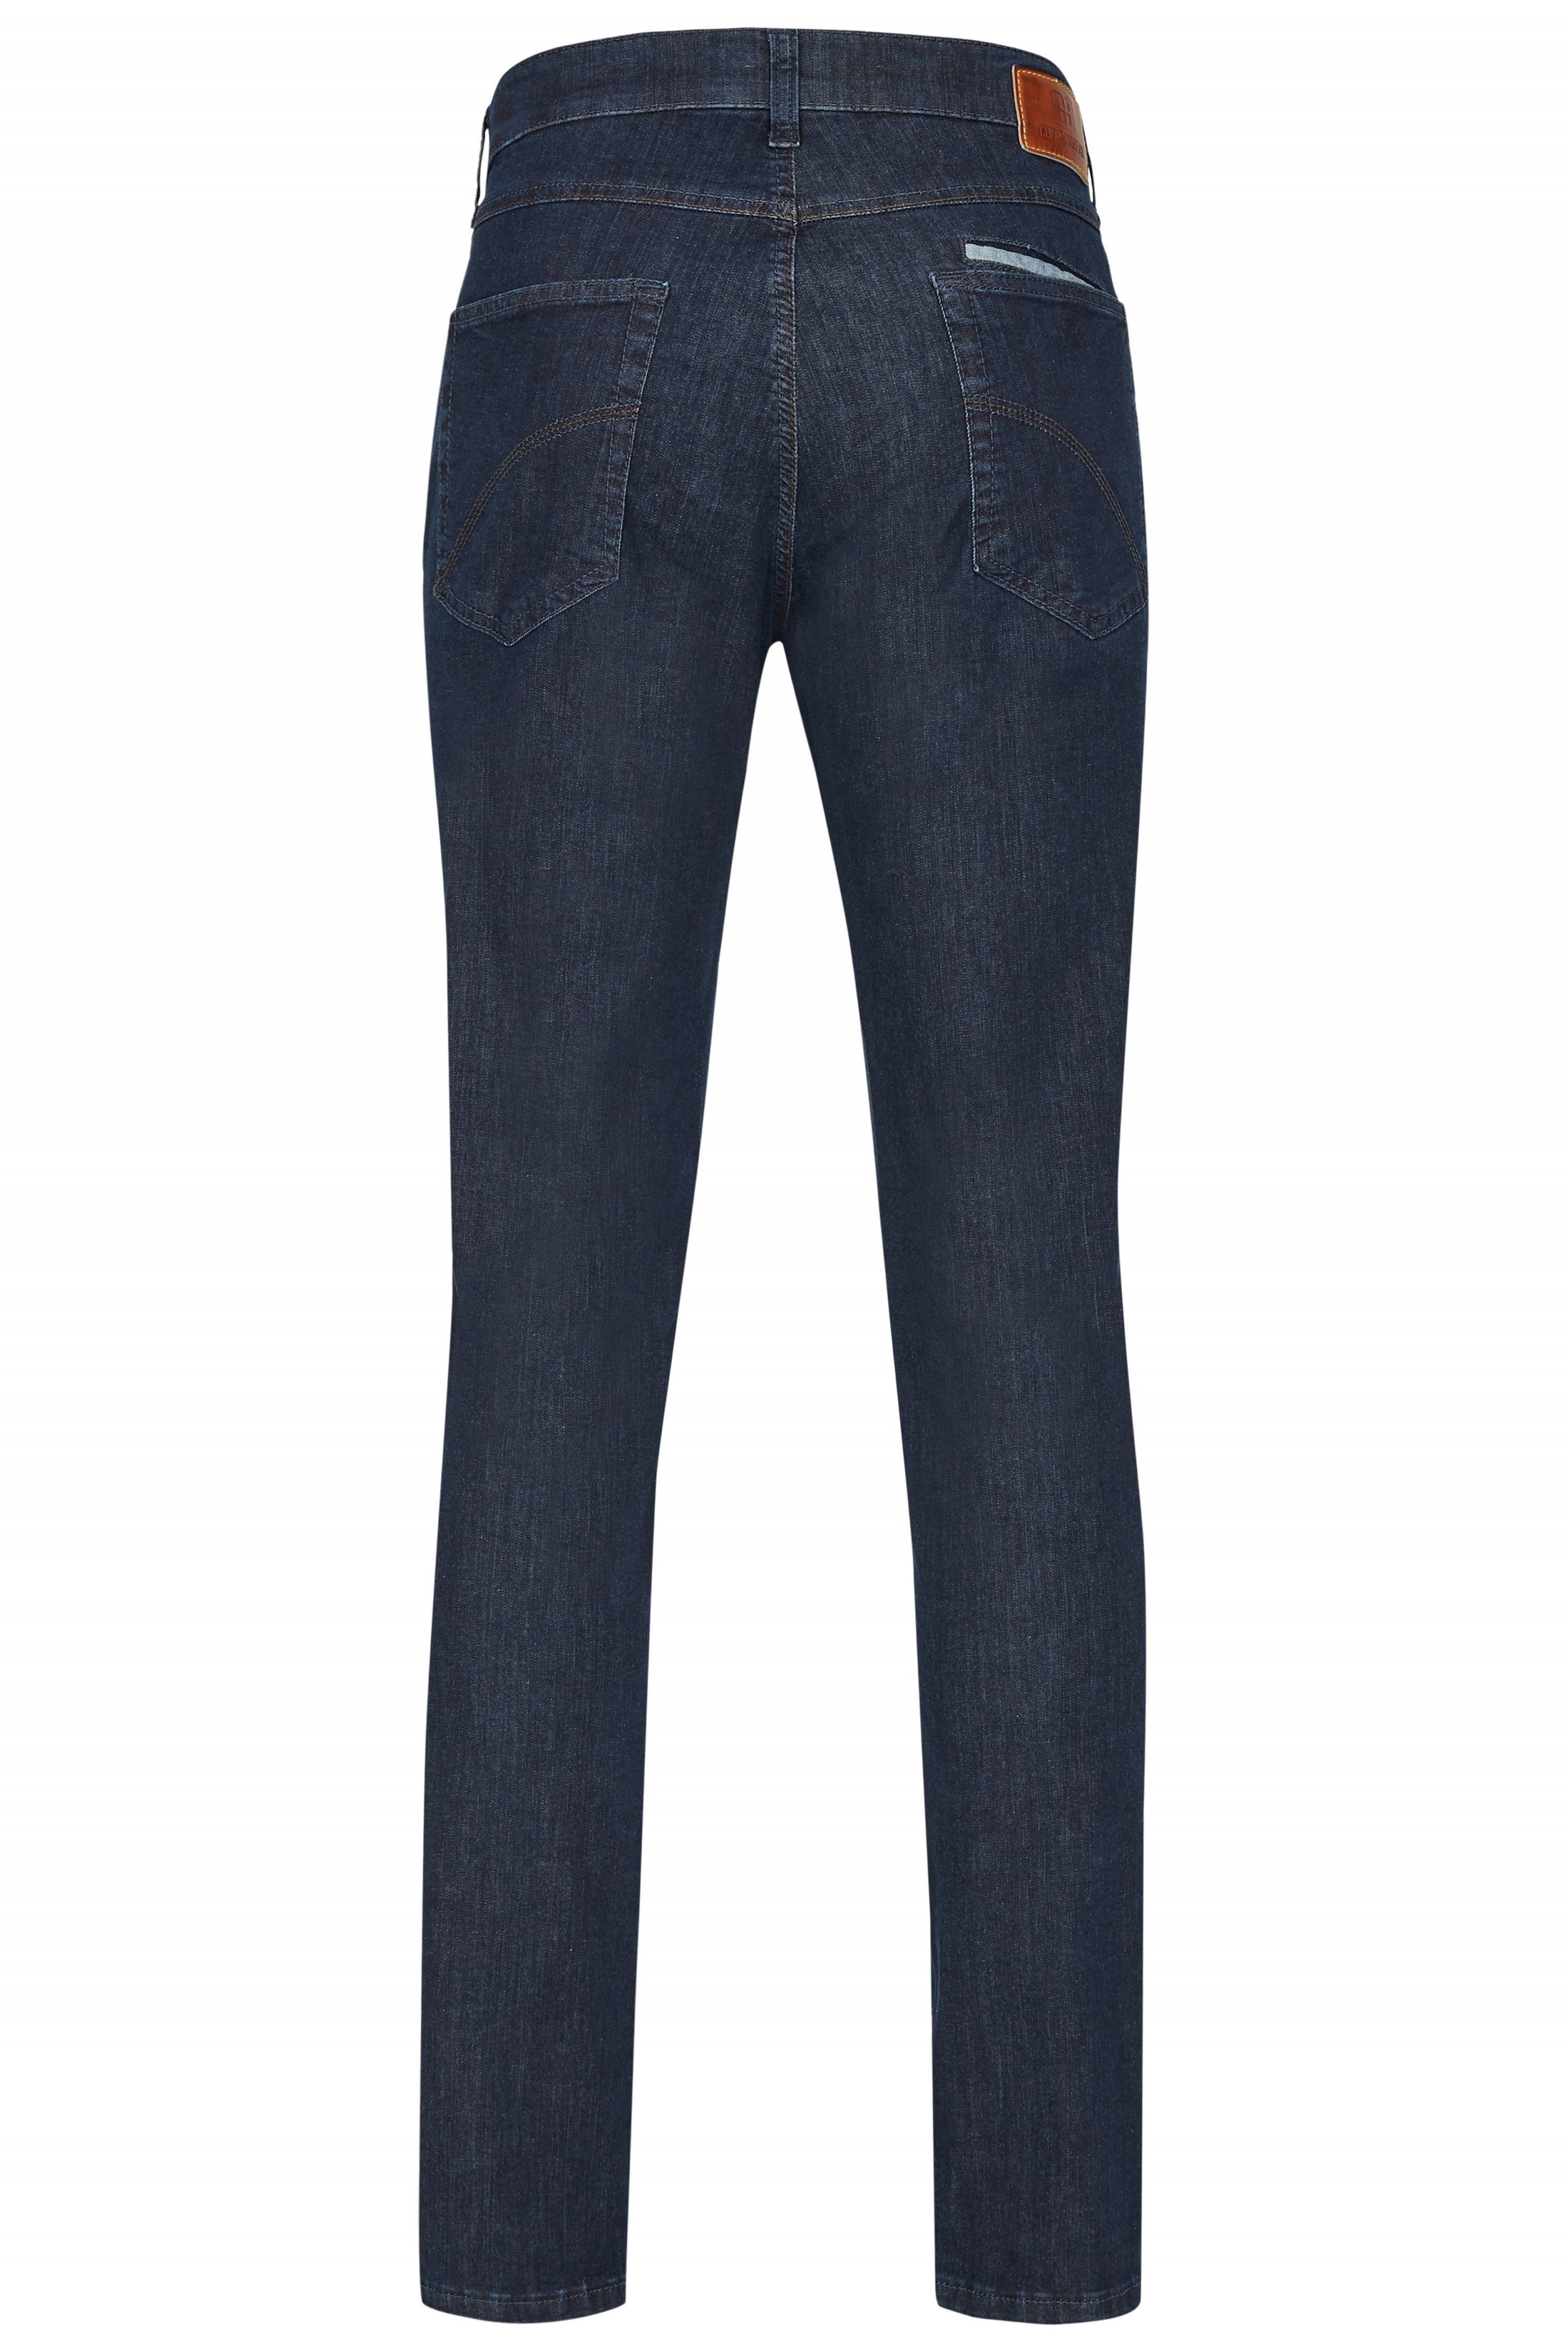 Komfortbund mit Slim-fit-Jeans HENRY elastischem Club Comfort X6516 dunkelblau of